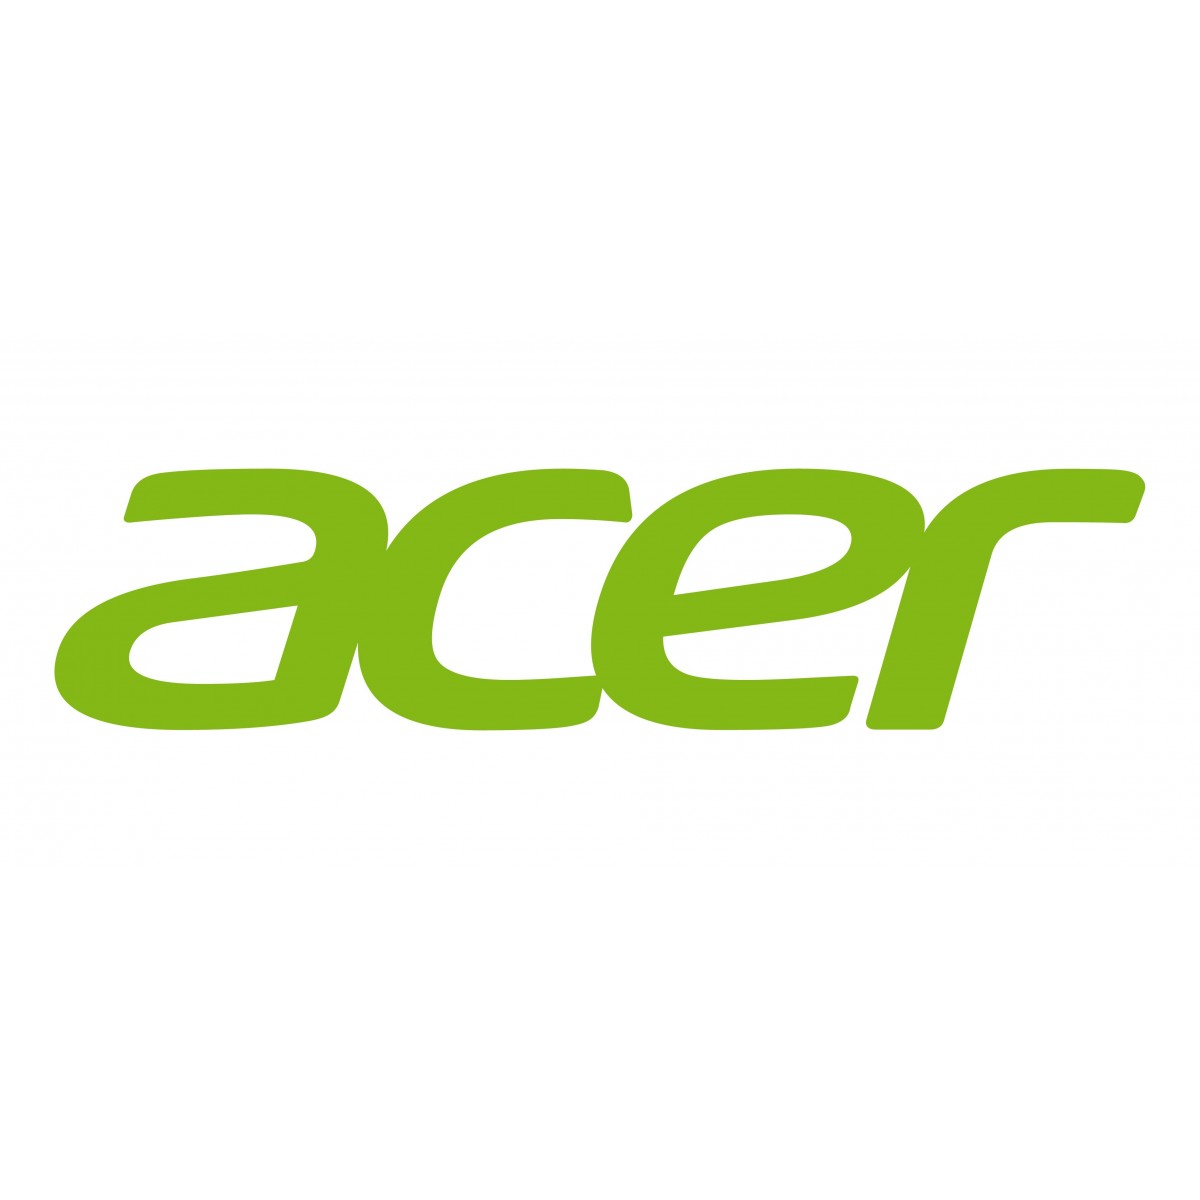 Acer MC.JQH11.001 - 220 W - 5000 h - Acer - S1286H/S1286HN/S1386WH/S1386WHN